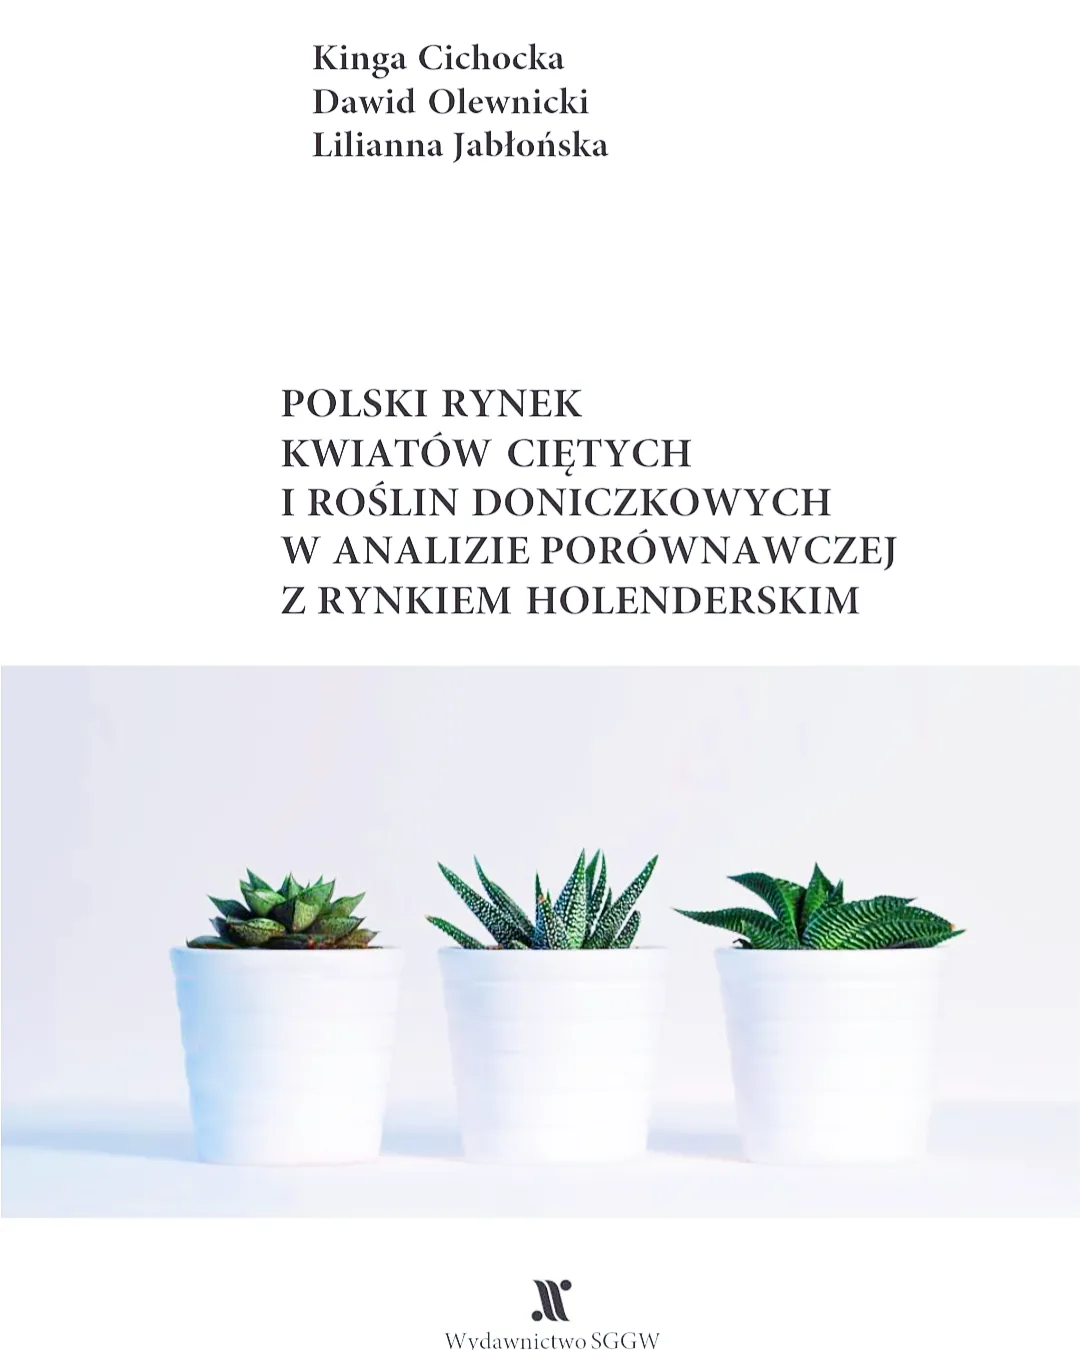 Polski rynek kwiatów ciętych i roślin doniczkowych w analizie porównawczej z rynkiem holenderskim